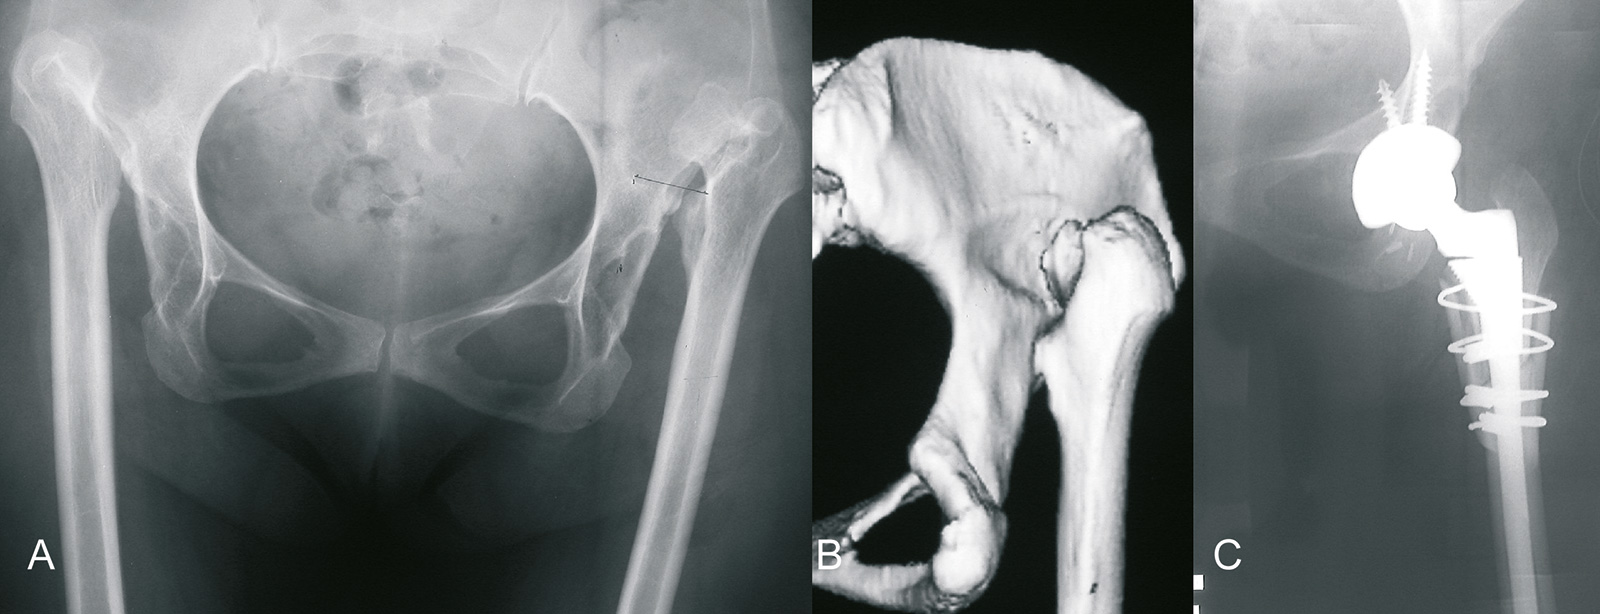 Abb. 1-12: Hüftdysplasie: Beckenübersichtsaufnahme und 3-D CT-Rekonstruktion (A,B). Röntgenbild nach Implantation einer S-ROM Hüftprothese und Verkürzungsosteotomie (C)